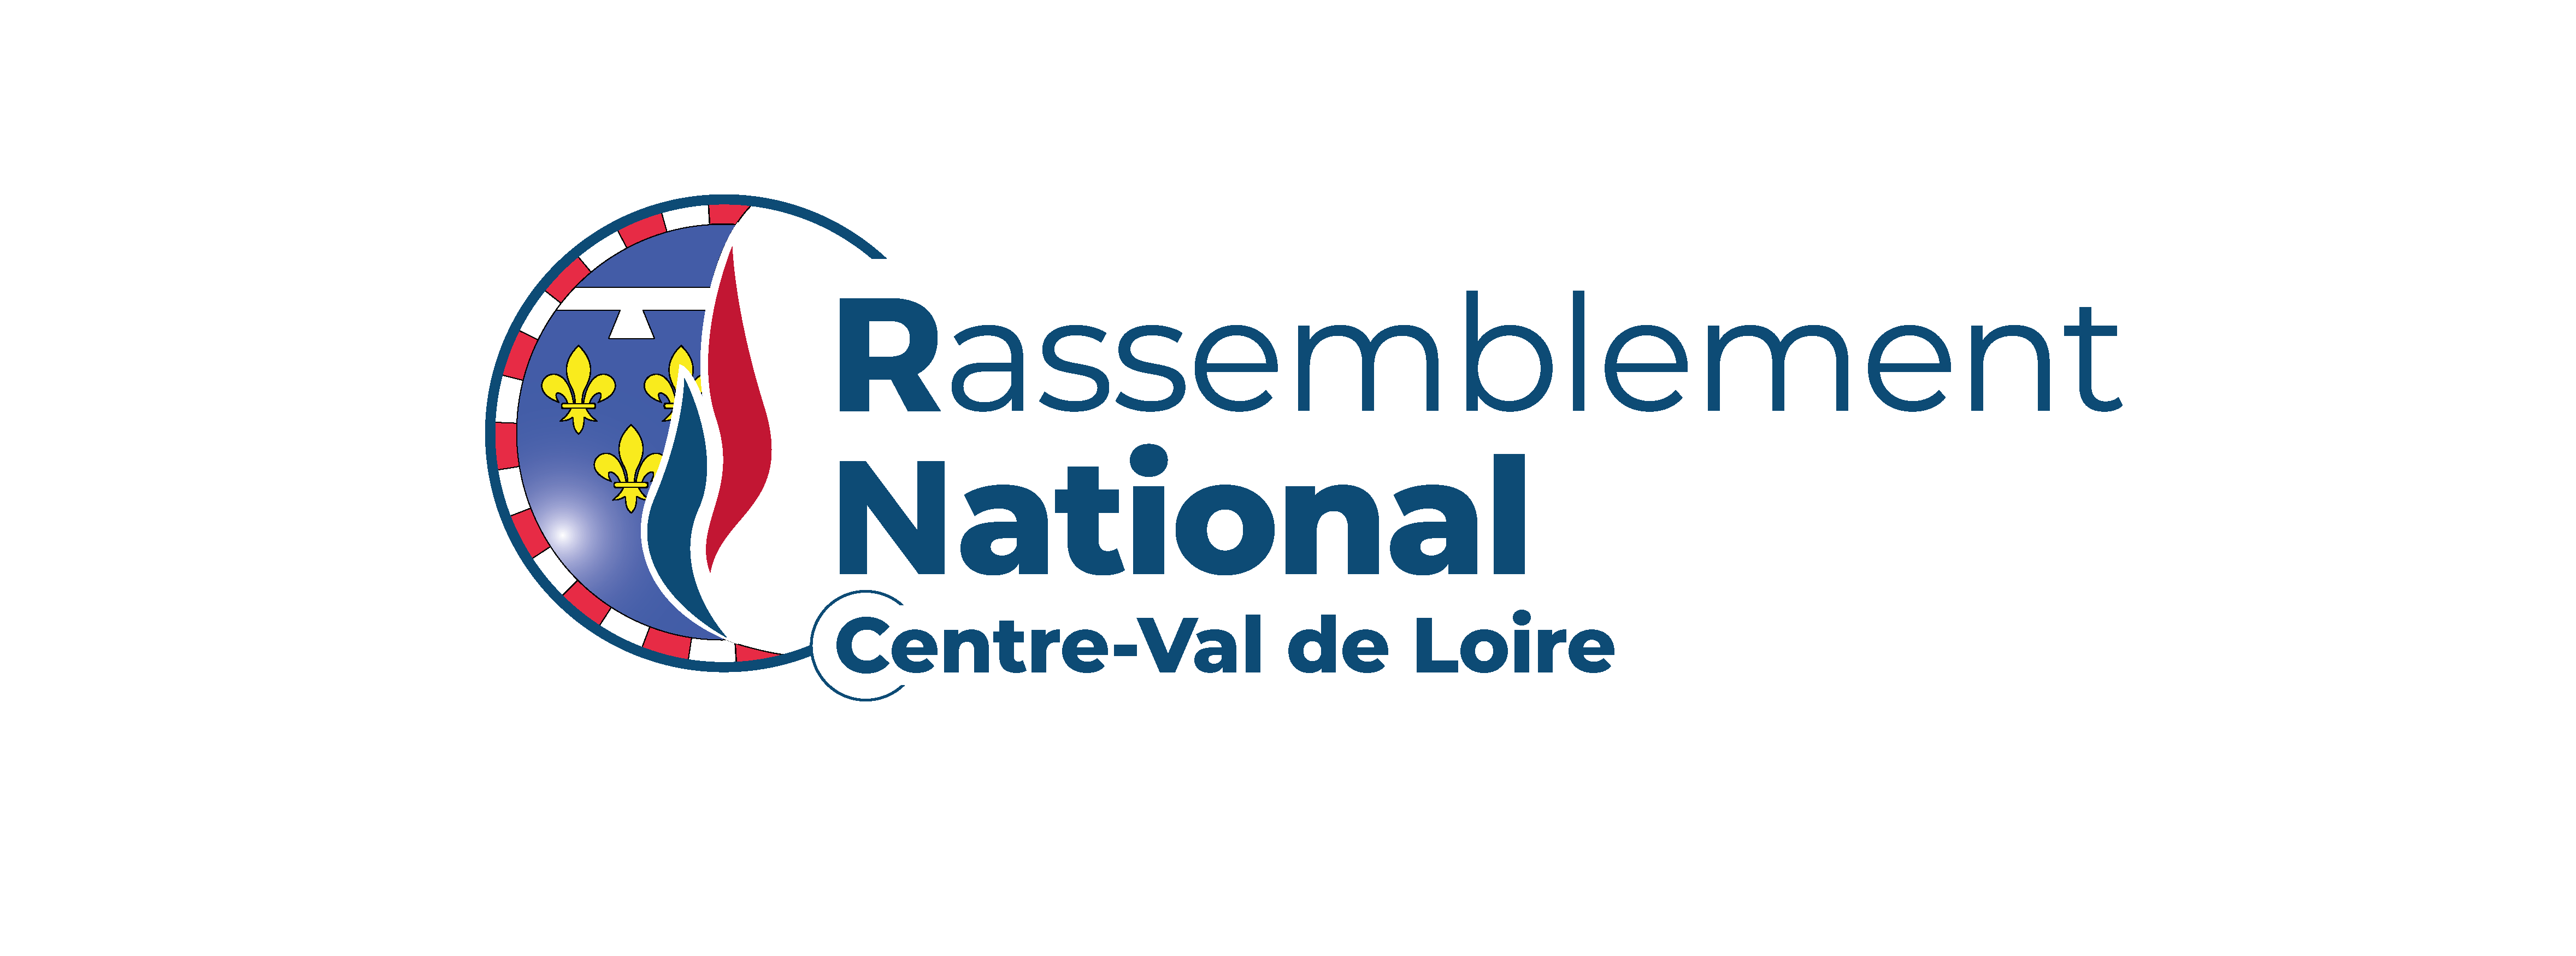 RASSEMBLEMENT NATIONAL RÉGION CENTRE-VAL DE LOIRE